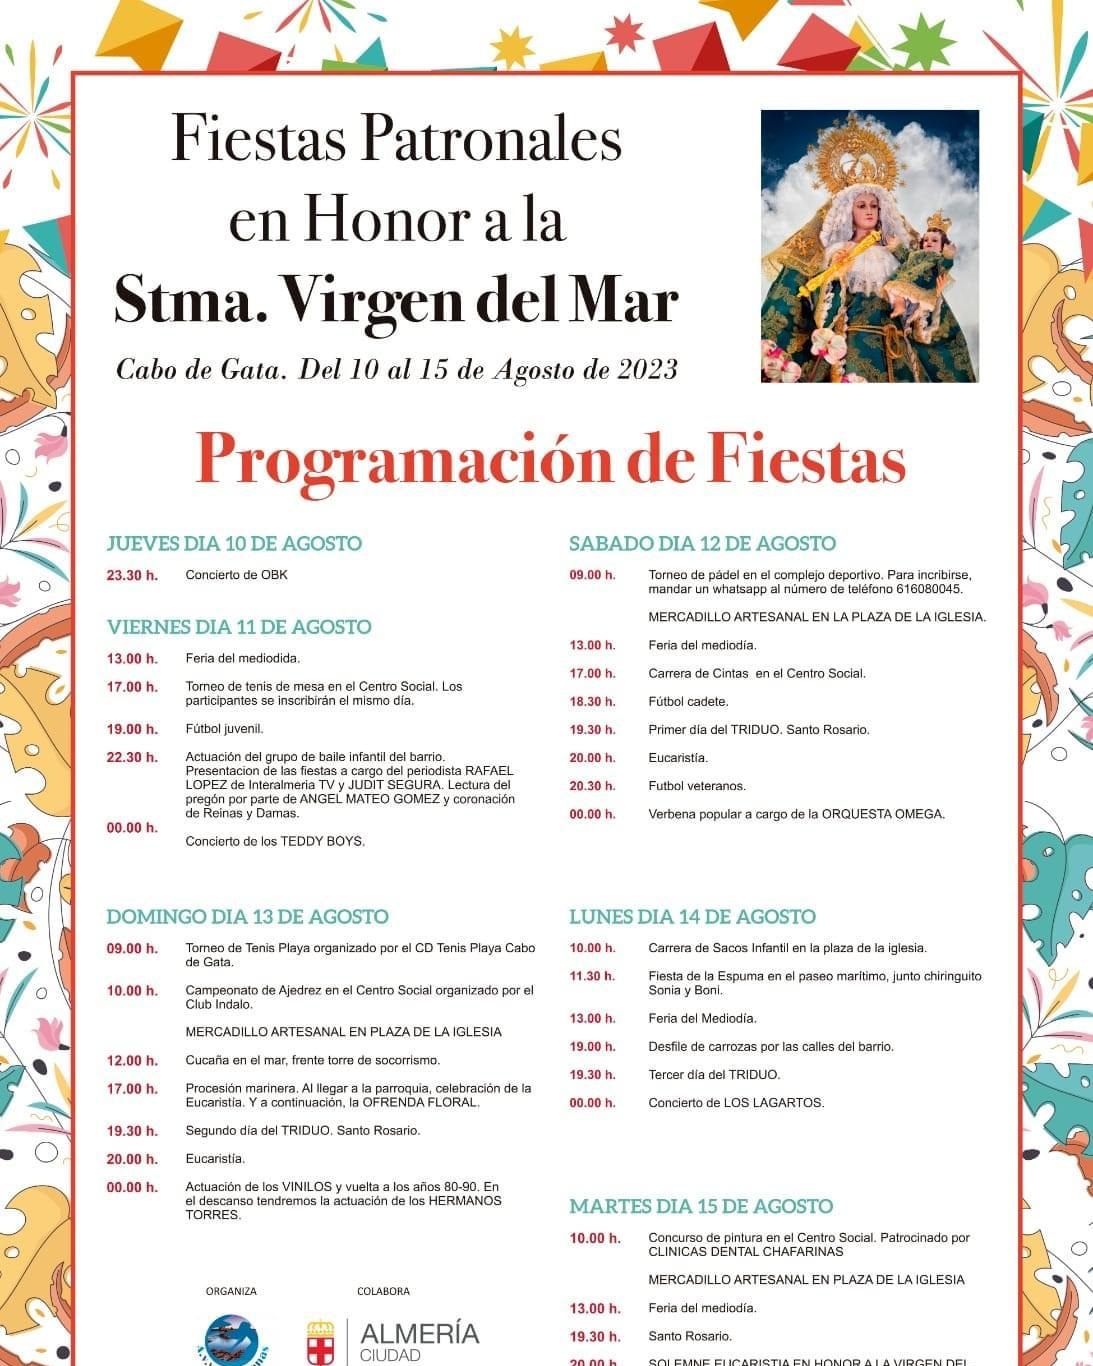 Fiestas Patronales en Honor a la Stma. Virgen del Mar